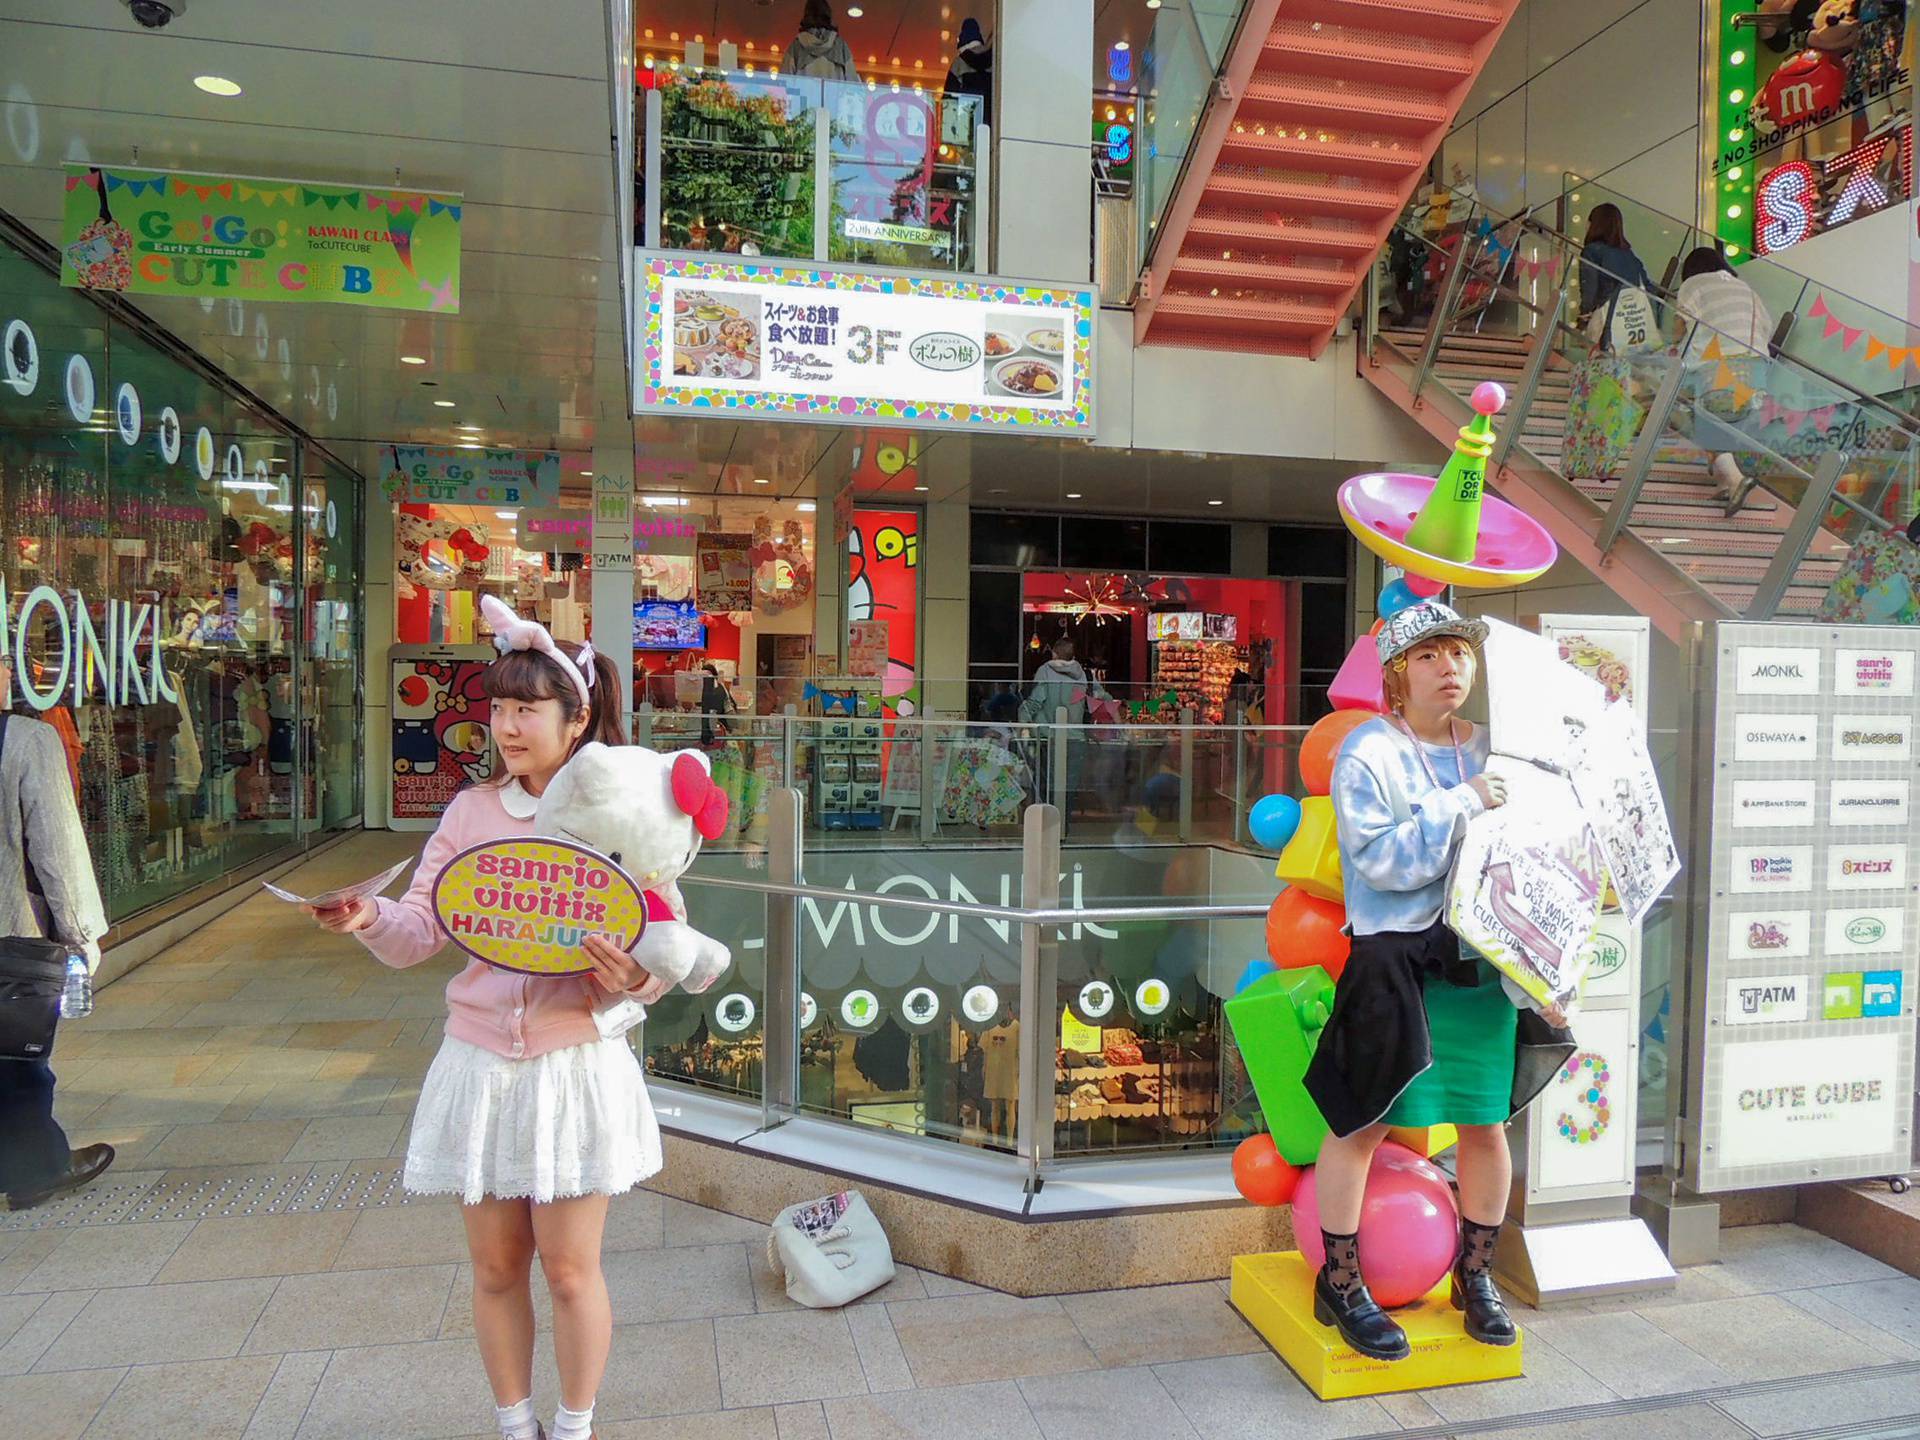 Neke ozbiljno 'čudne' stvari postoje samo u Japanu: Fetiš automati, kafići za maženje...